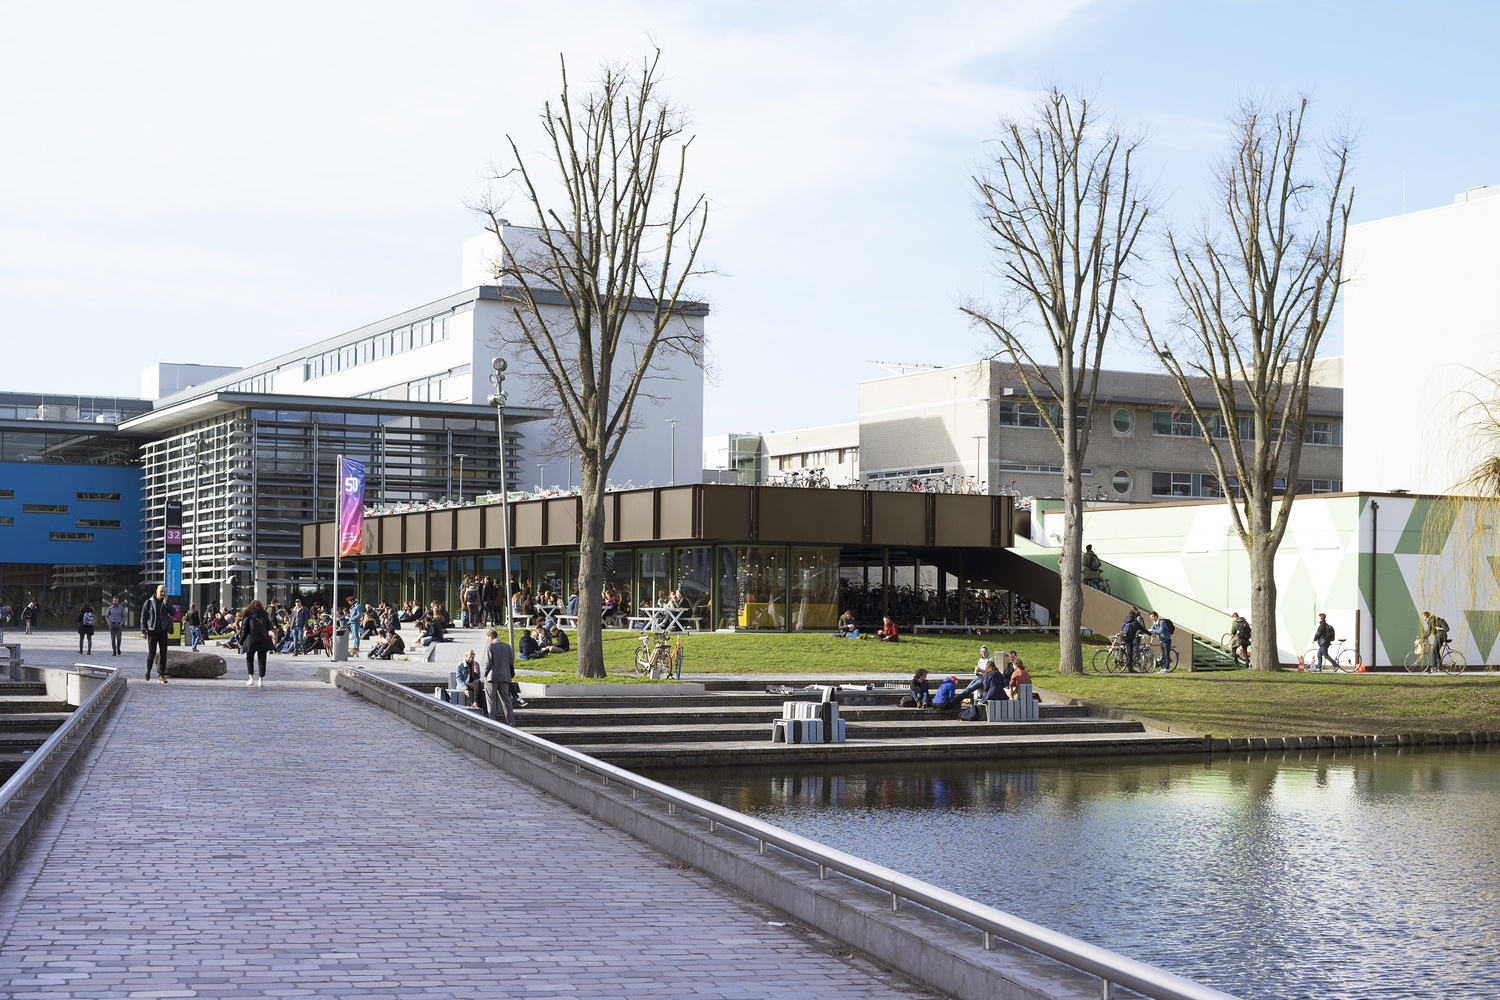 این پارکینگ که در کمپ TU Delft قرار دارد، 2100 دوچرخه را در خود جای داده